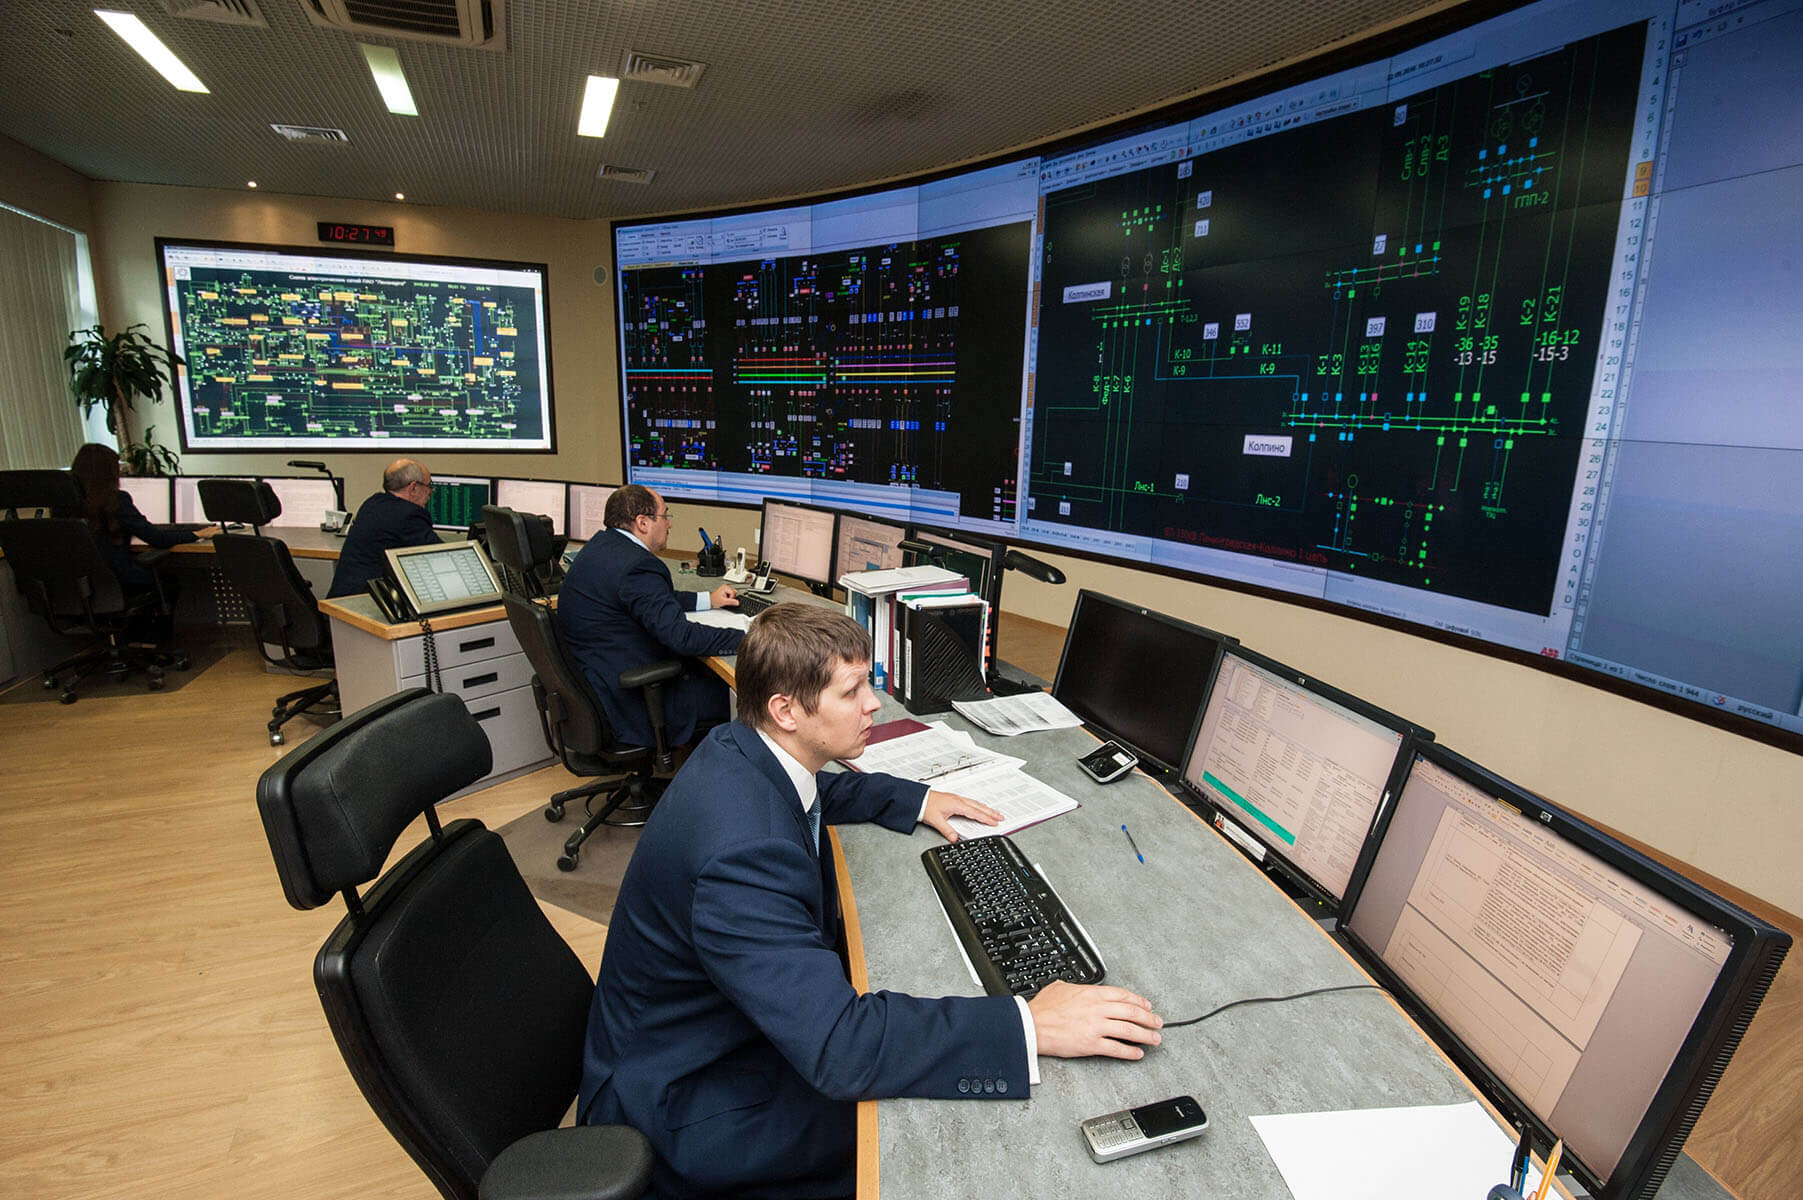 Employés travaillant dans une salle de contrôle sur des postes de travail avec des murs vidéo affichant des données sur l'infrastructure informatique.